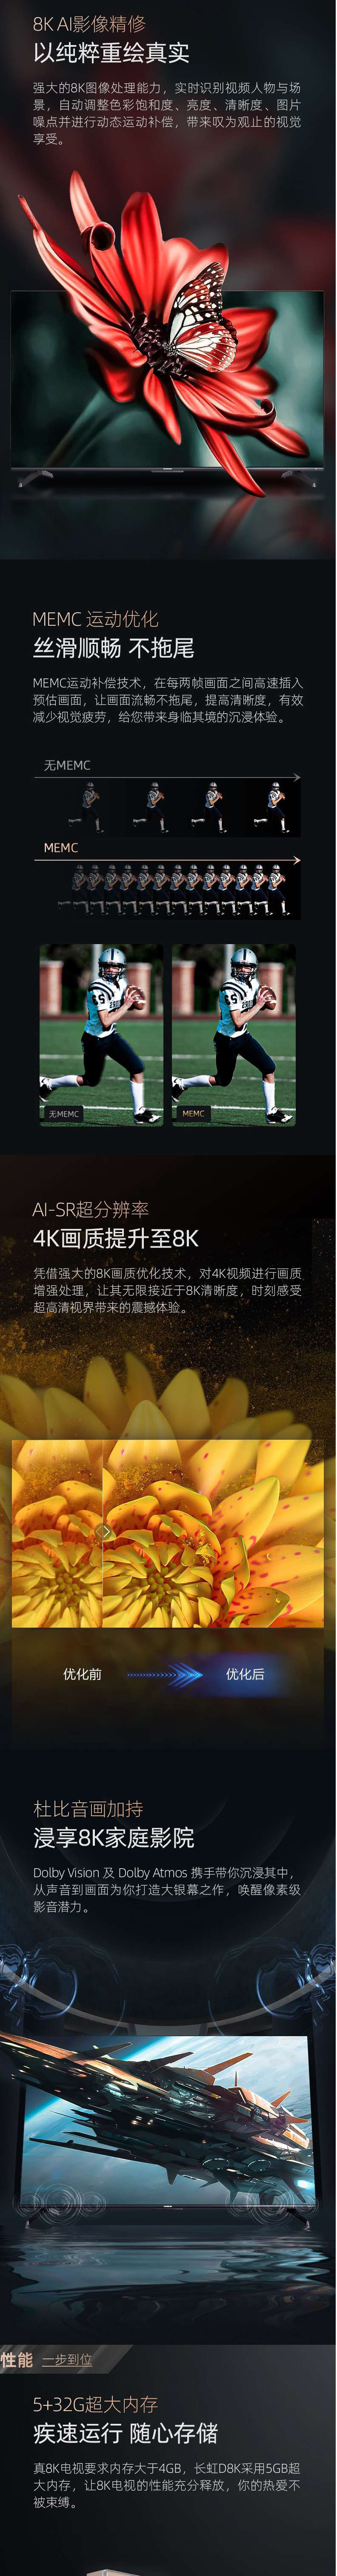 长虹/CHANGHONG 65D8K 65英寸8K超高清5+32GB杜比音画